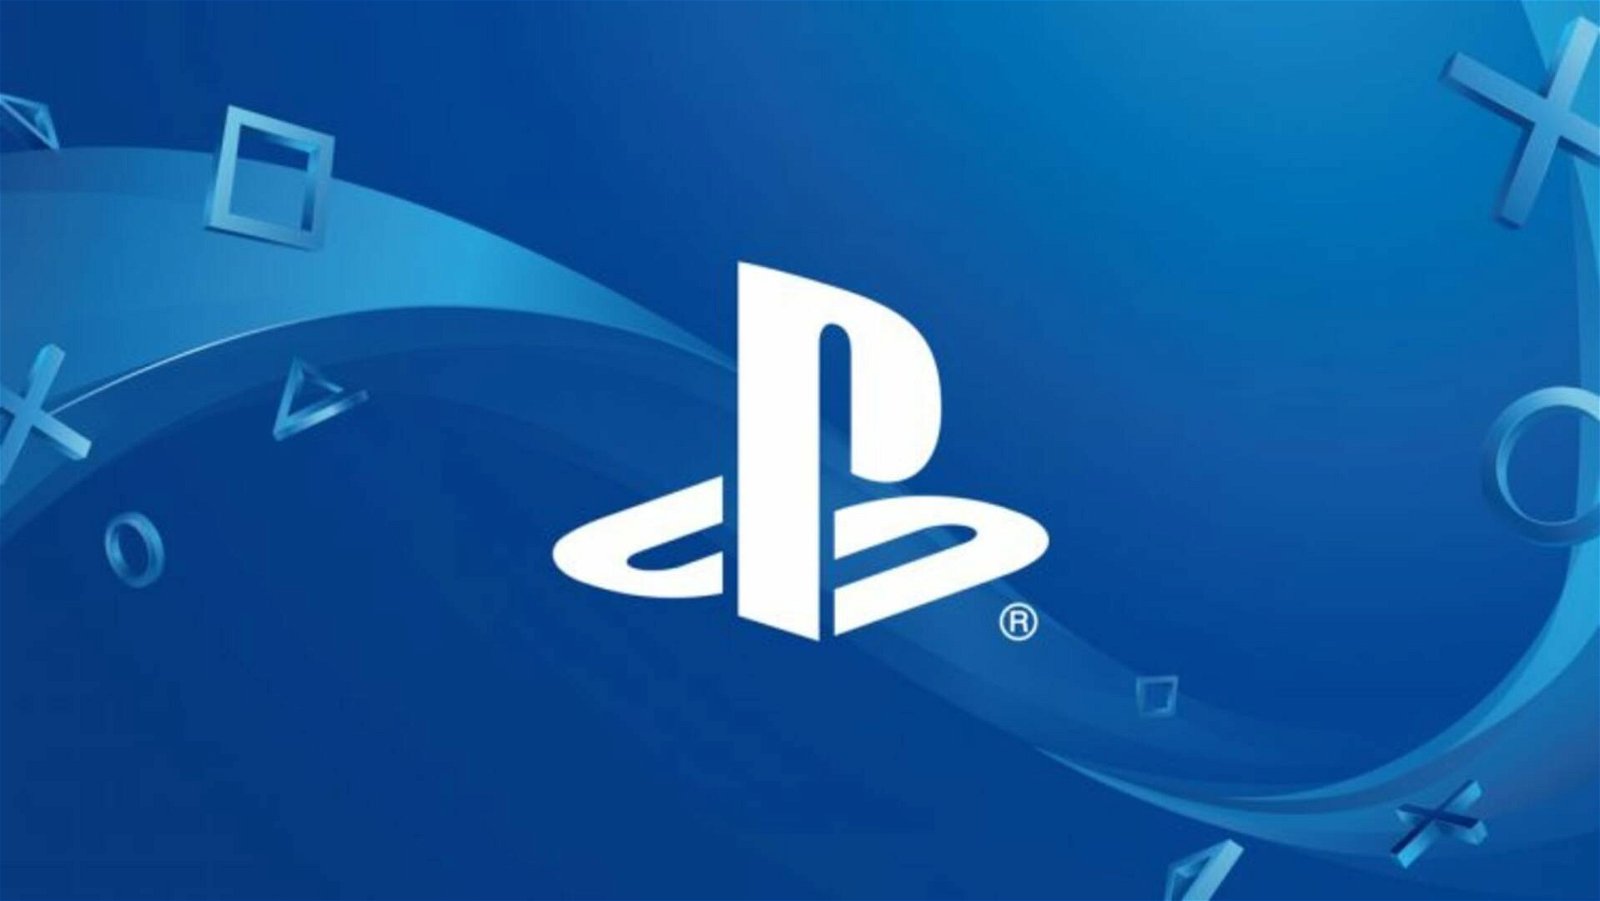 Esclusive PlayStation su PC al lancio? Sony fa chiarezza